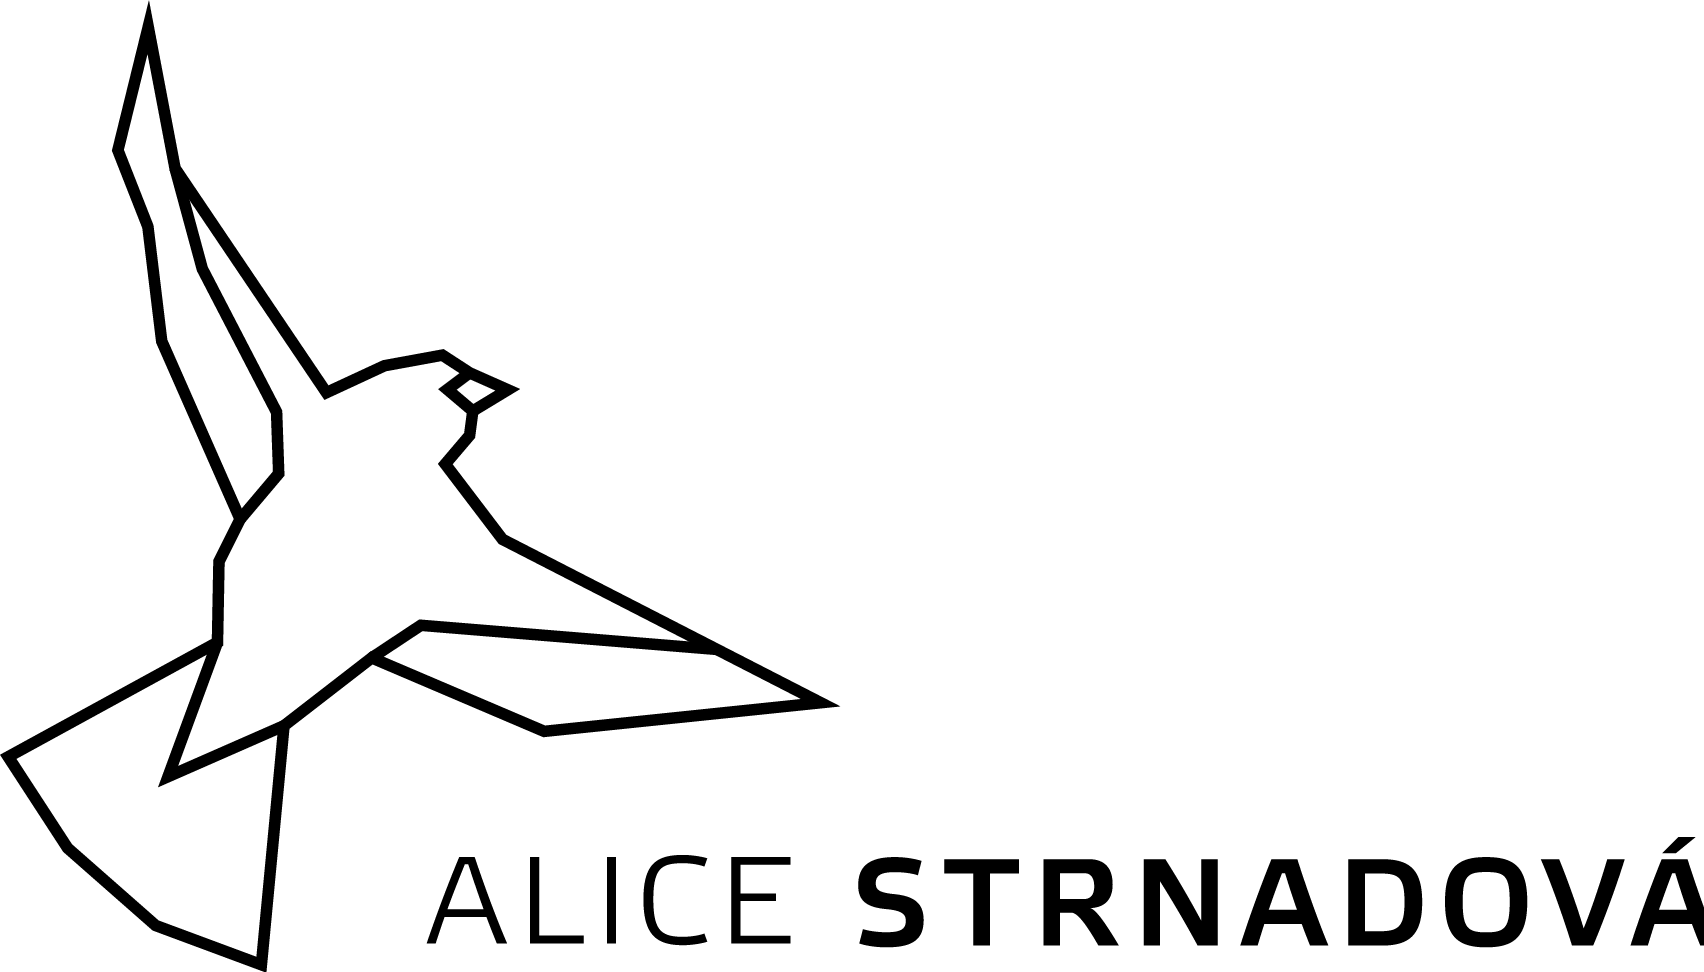 Alice Strnadova